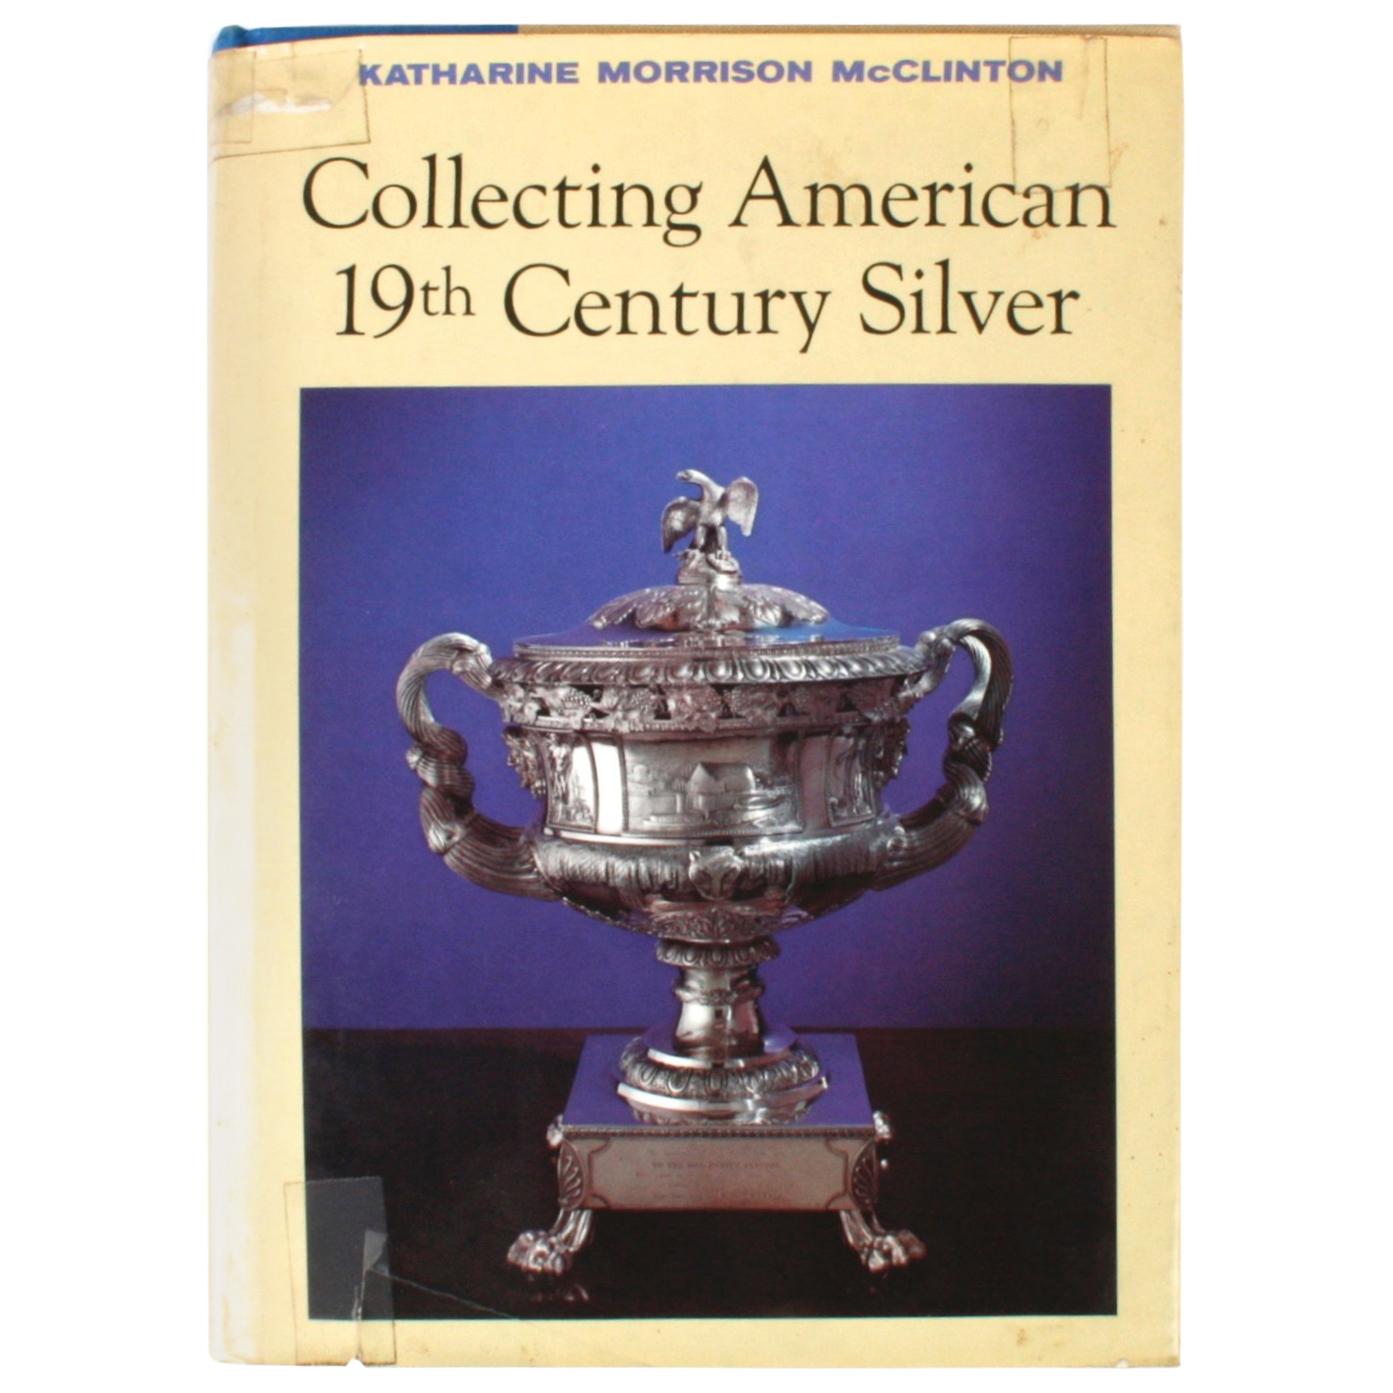 Sammlerstücke aus amerikanischem Silber des 19. Jahrhunderts von Katherine Morrison McClinton